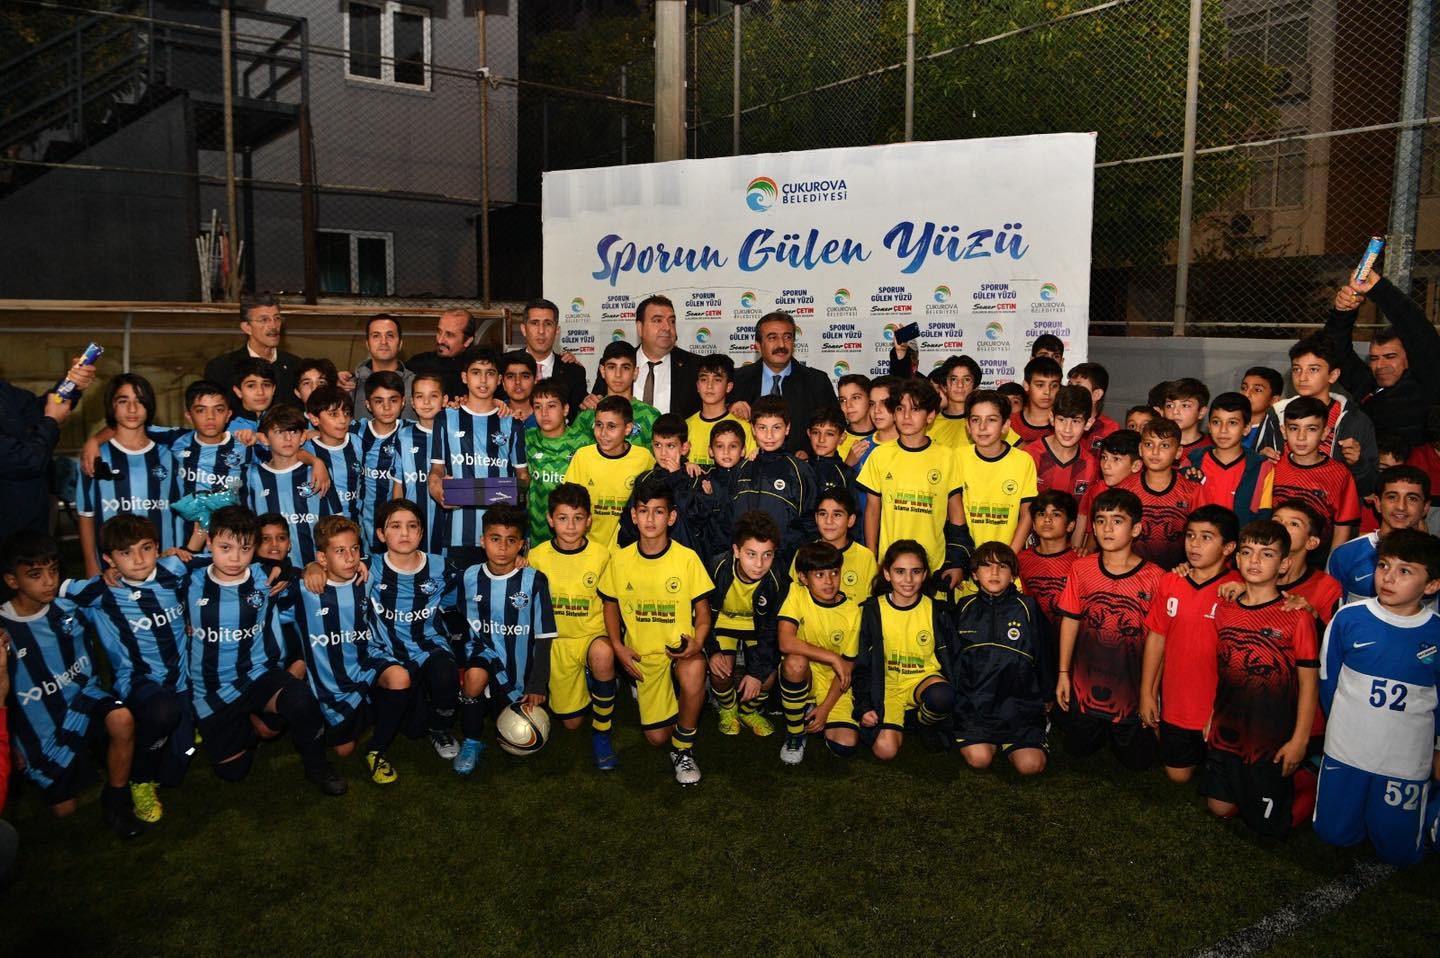 Sporun Gülen Yüzü Cumhuriyet Futbol Turnuvası sona erdi #adana